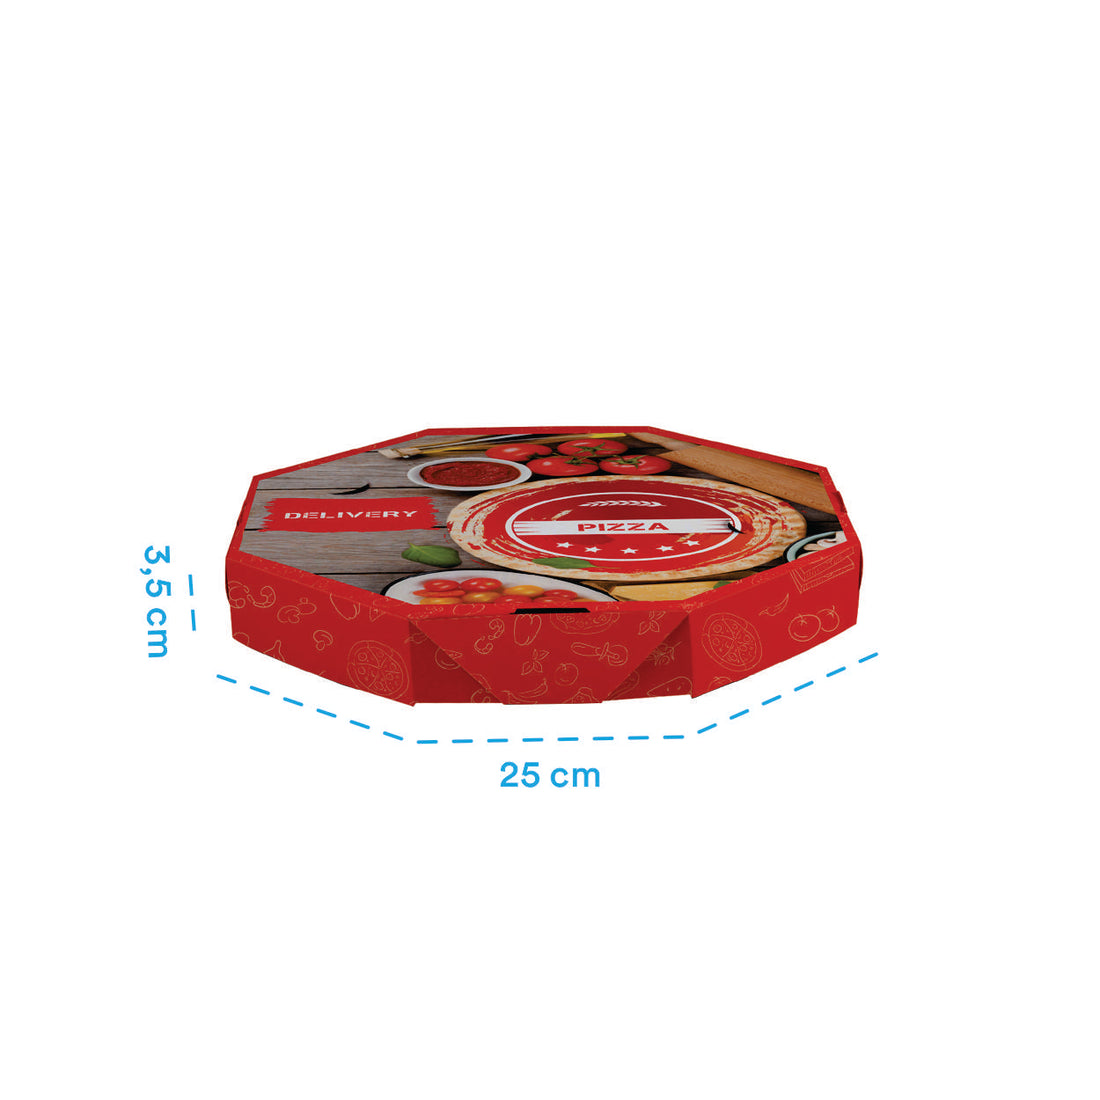 Caixa de Pizza Italianinha com Fundo Laminado Octagonal 25cm